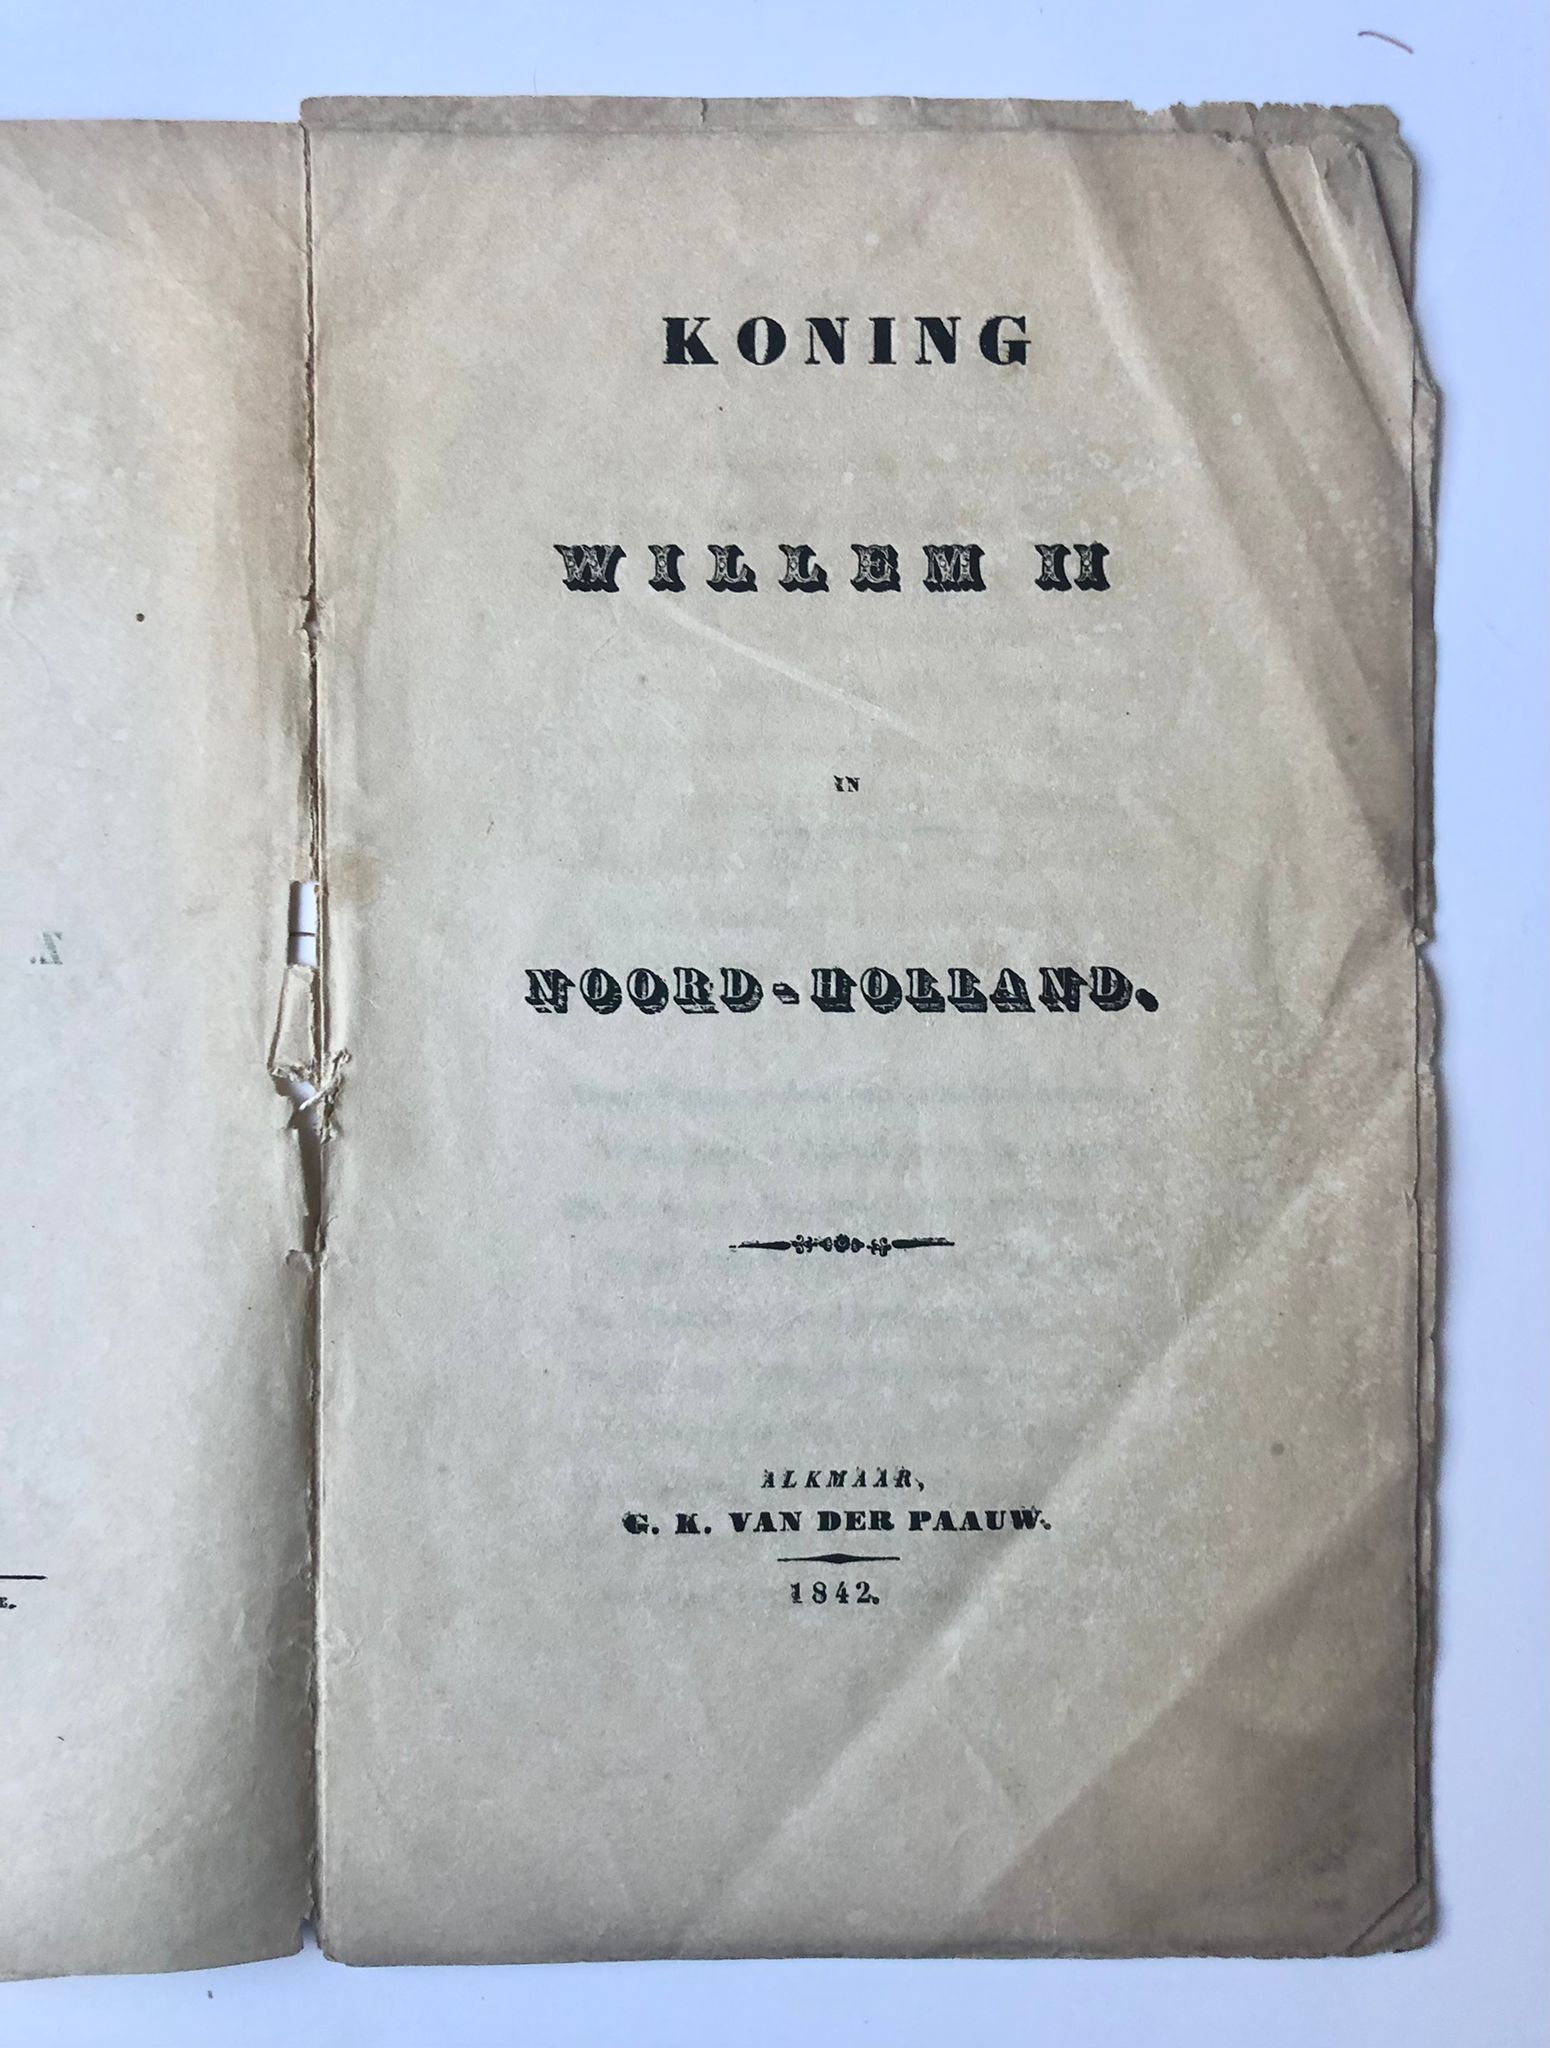 [Rare antique book on King William II in The Netherlands, 1842] Koning Willem II in Noord-Holland. Door W. J. Hofdijk, Bij G. K. van der Paauw, Alkmaar, 1842, 13 pp.